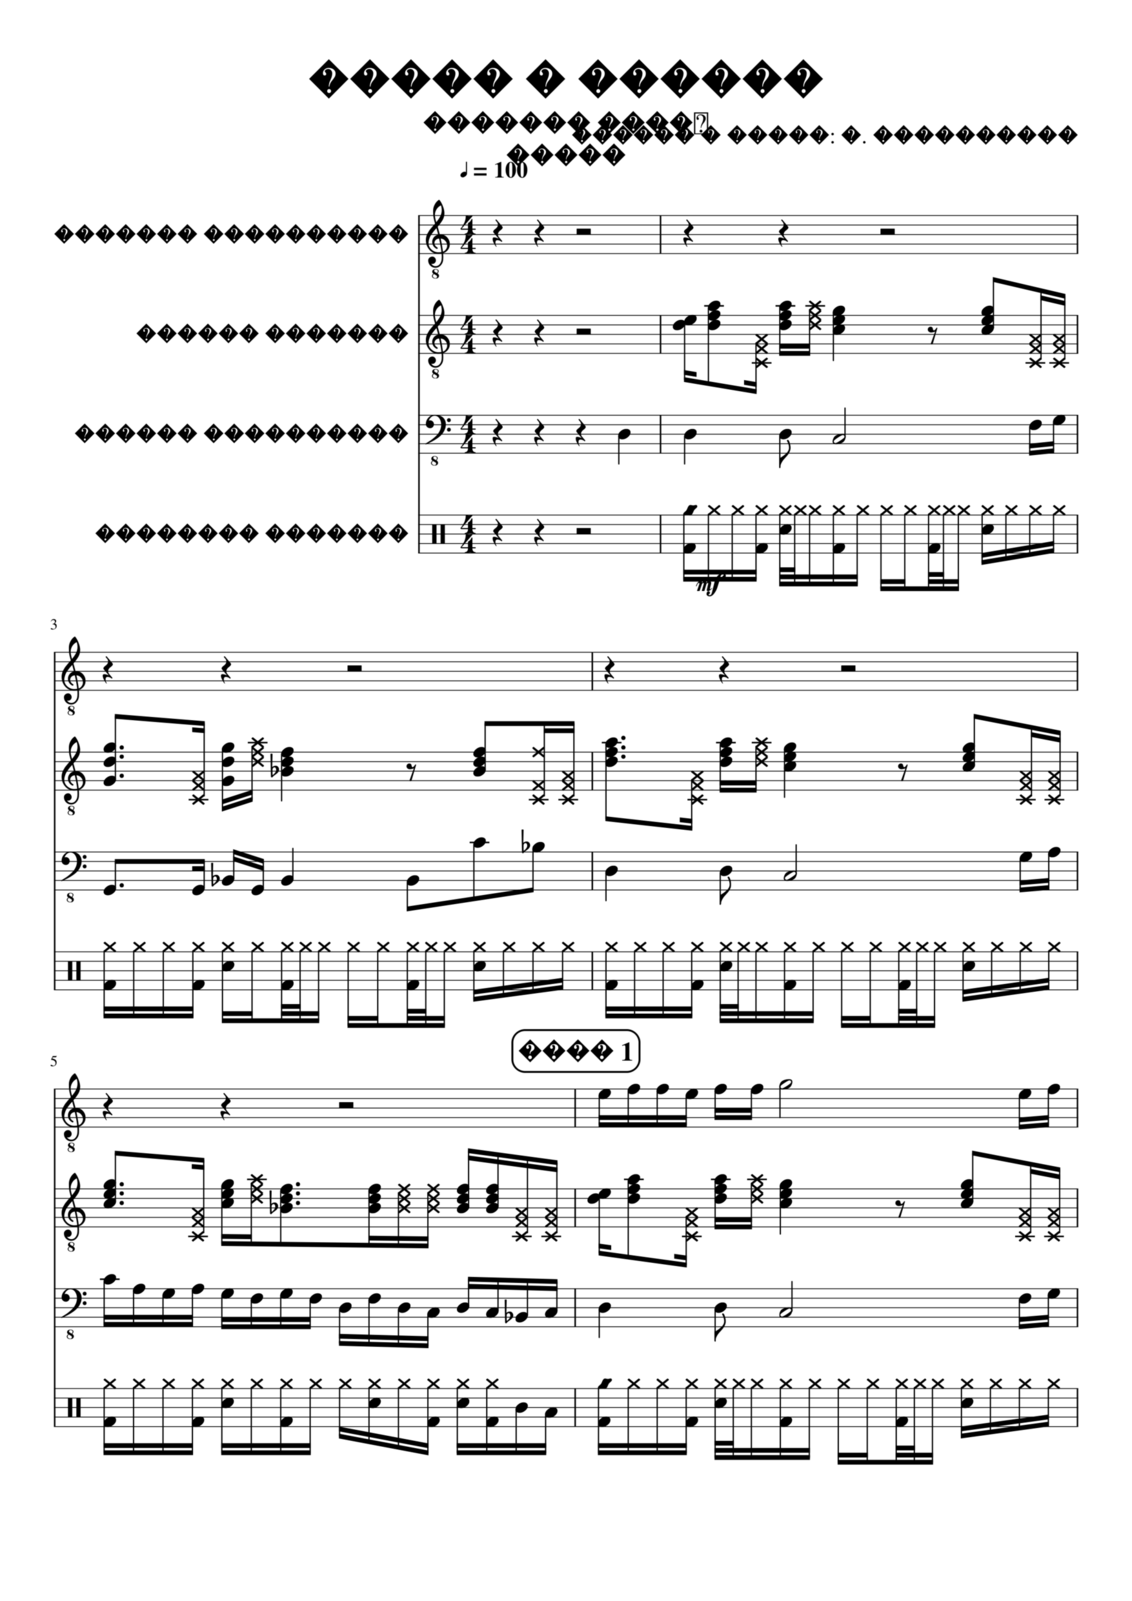 Vetryi i Tumanyi slide, Image 1